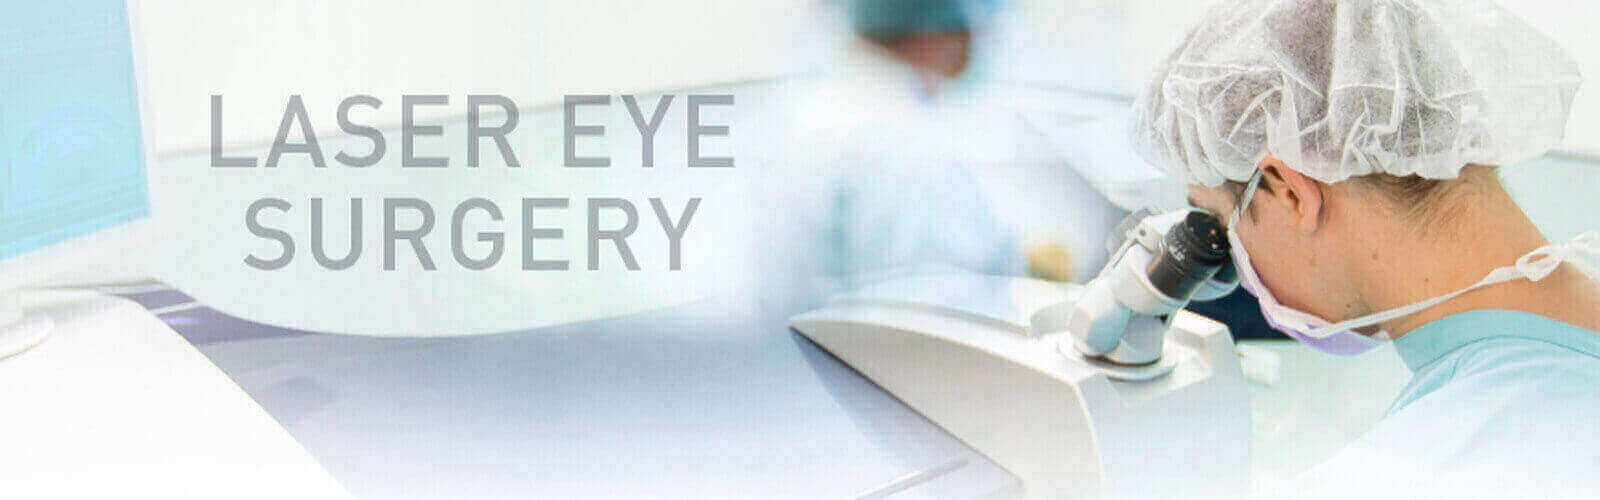 Laser Eye Surgery in Pakistan